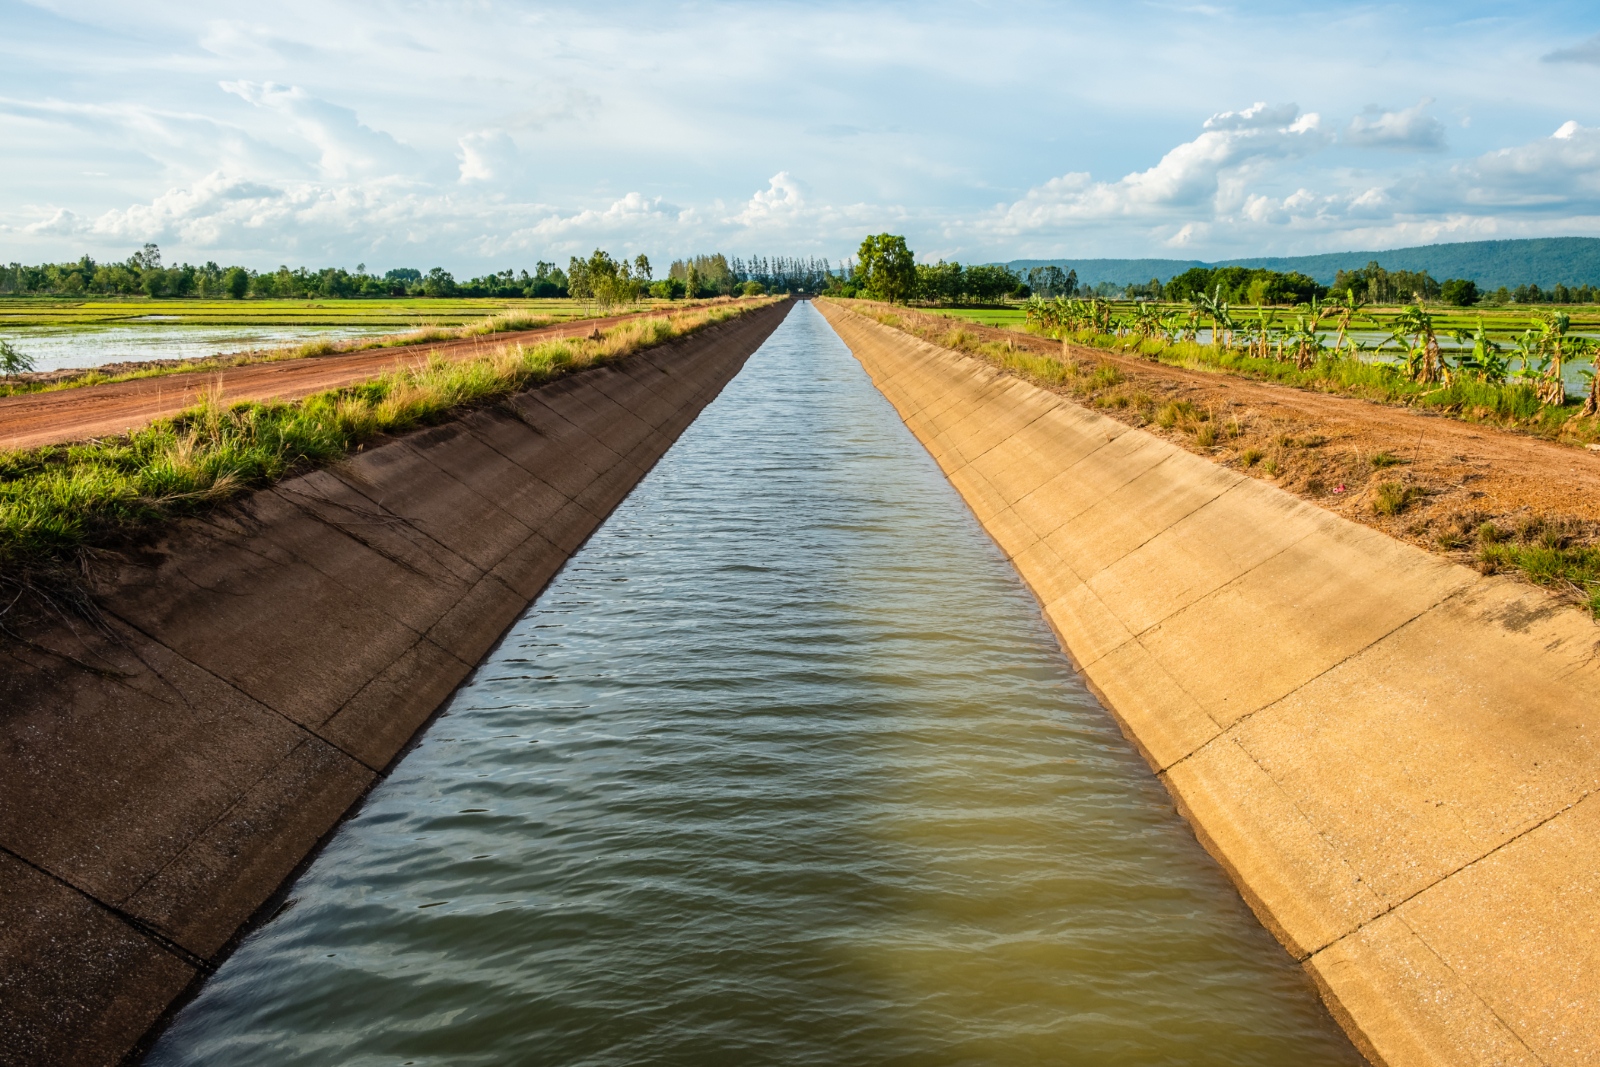   الحكومة تكذب بوار الأراضي الزراعية فى الفيوم بسبب وجود عجز مياه الري